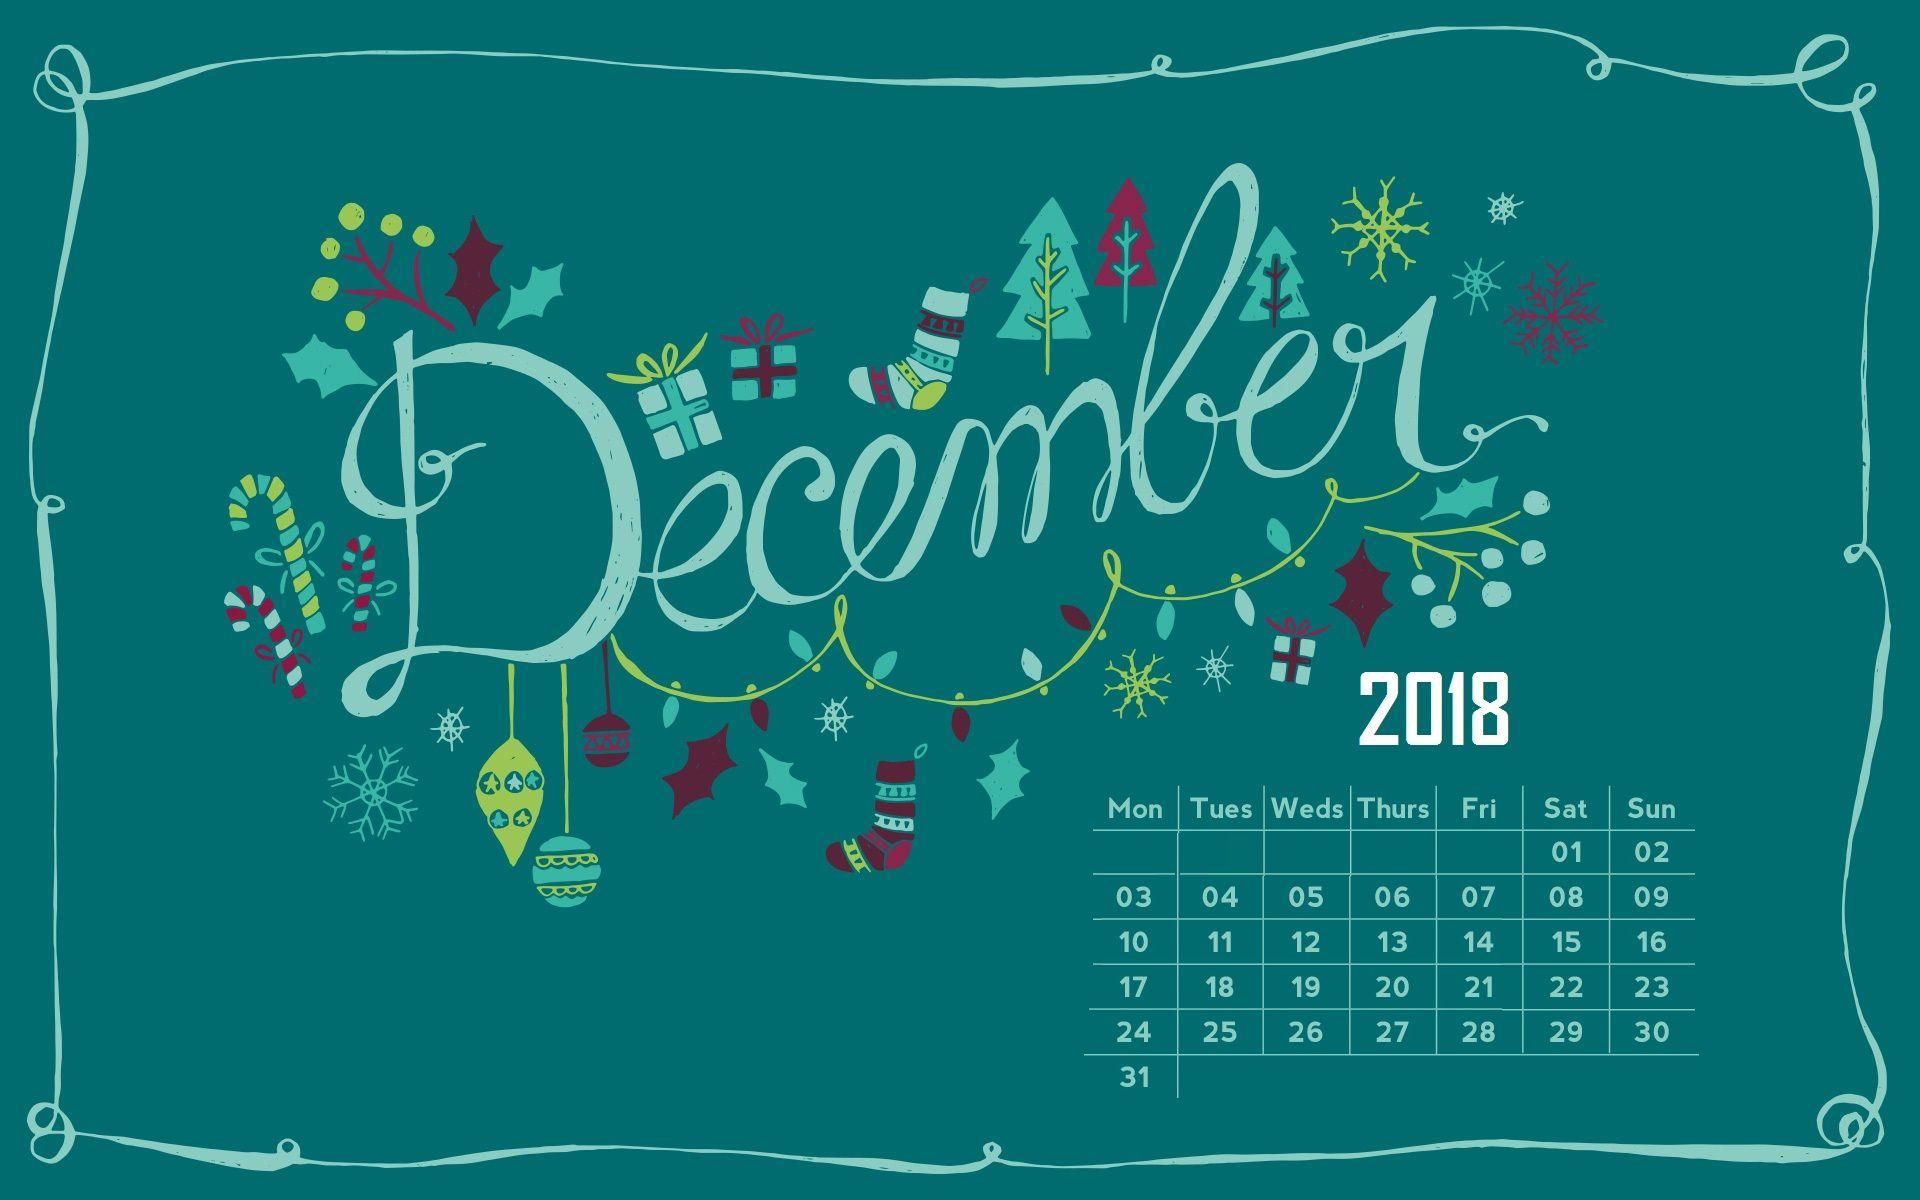 December 2018 Calendar Wallpaper